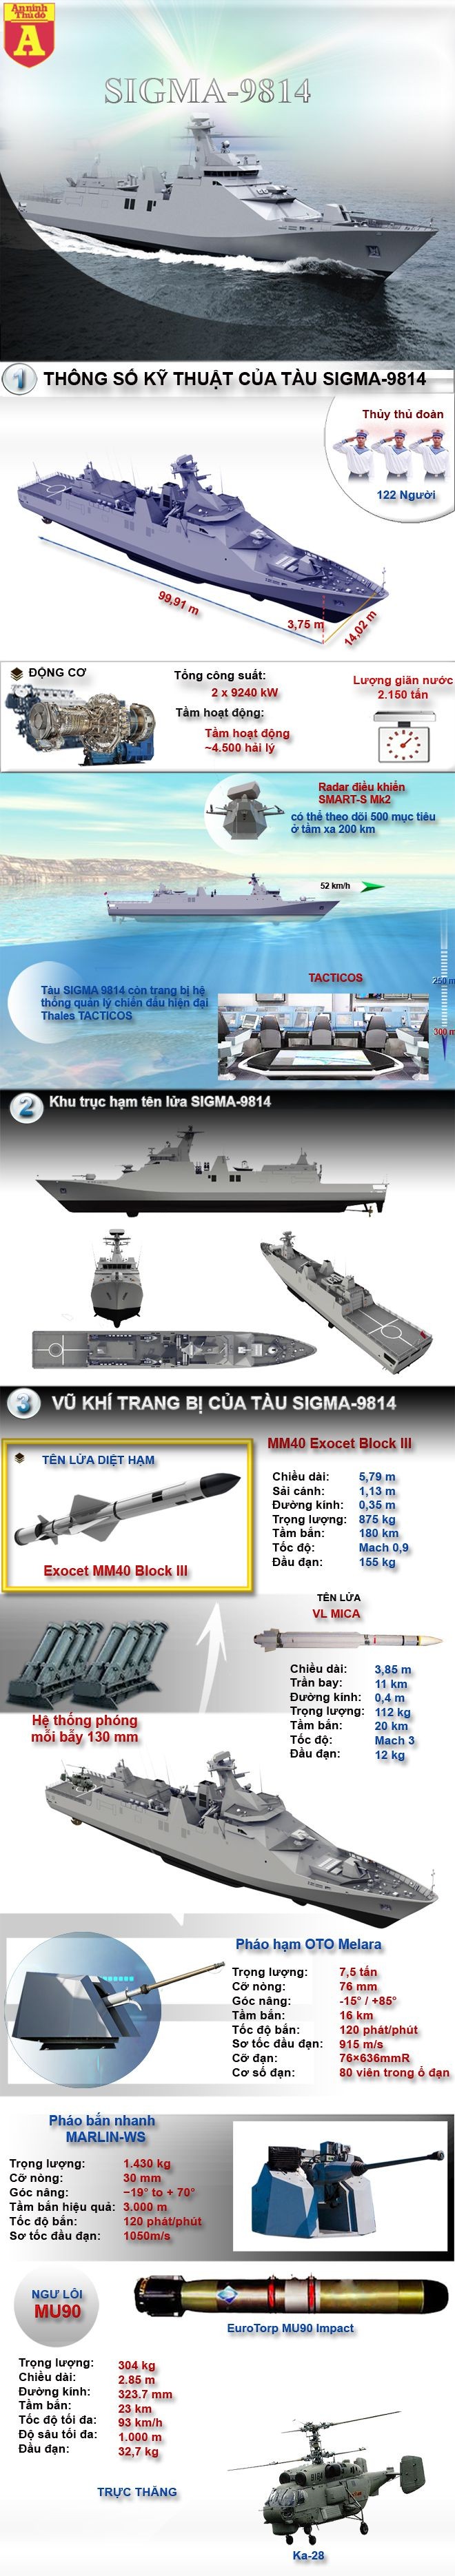 [Infographic] Sức mạnh chiến hạm tàng hình Sigma Hà Lan đang giới thiệu cho Việt Nam ảnh 2